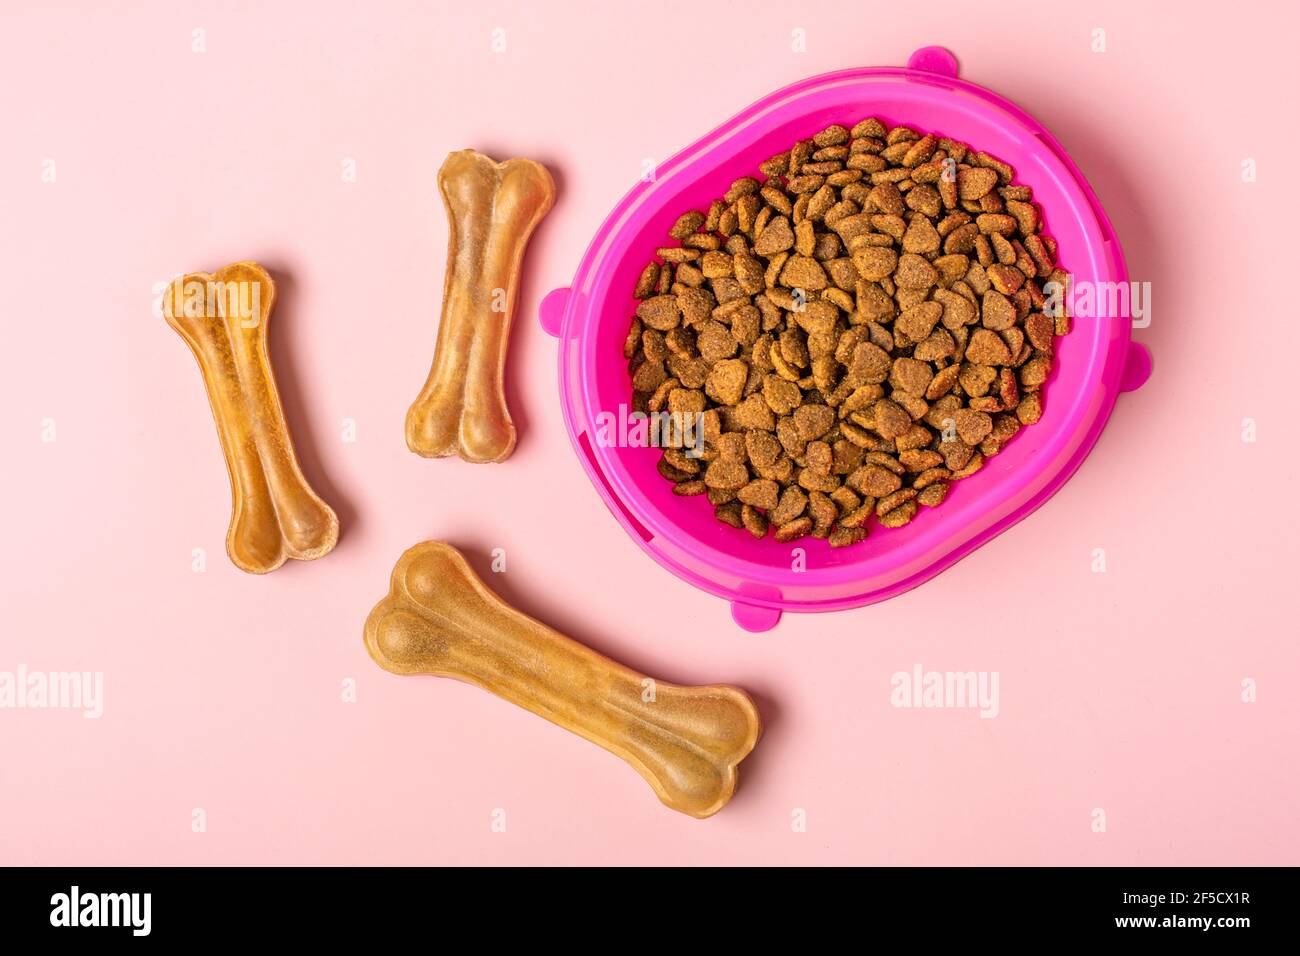 Natürliche Zahnknochen für Hund, trockene Stücke Katze oder Welpenfutter in rosa Kunststoffschale isoliert auf rosa Hintergrund Draufsicht Flat Lay Delicious Leckerbissen für Ihre Stockfoto